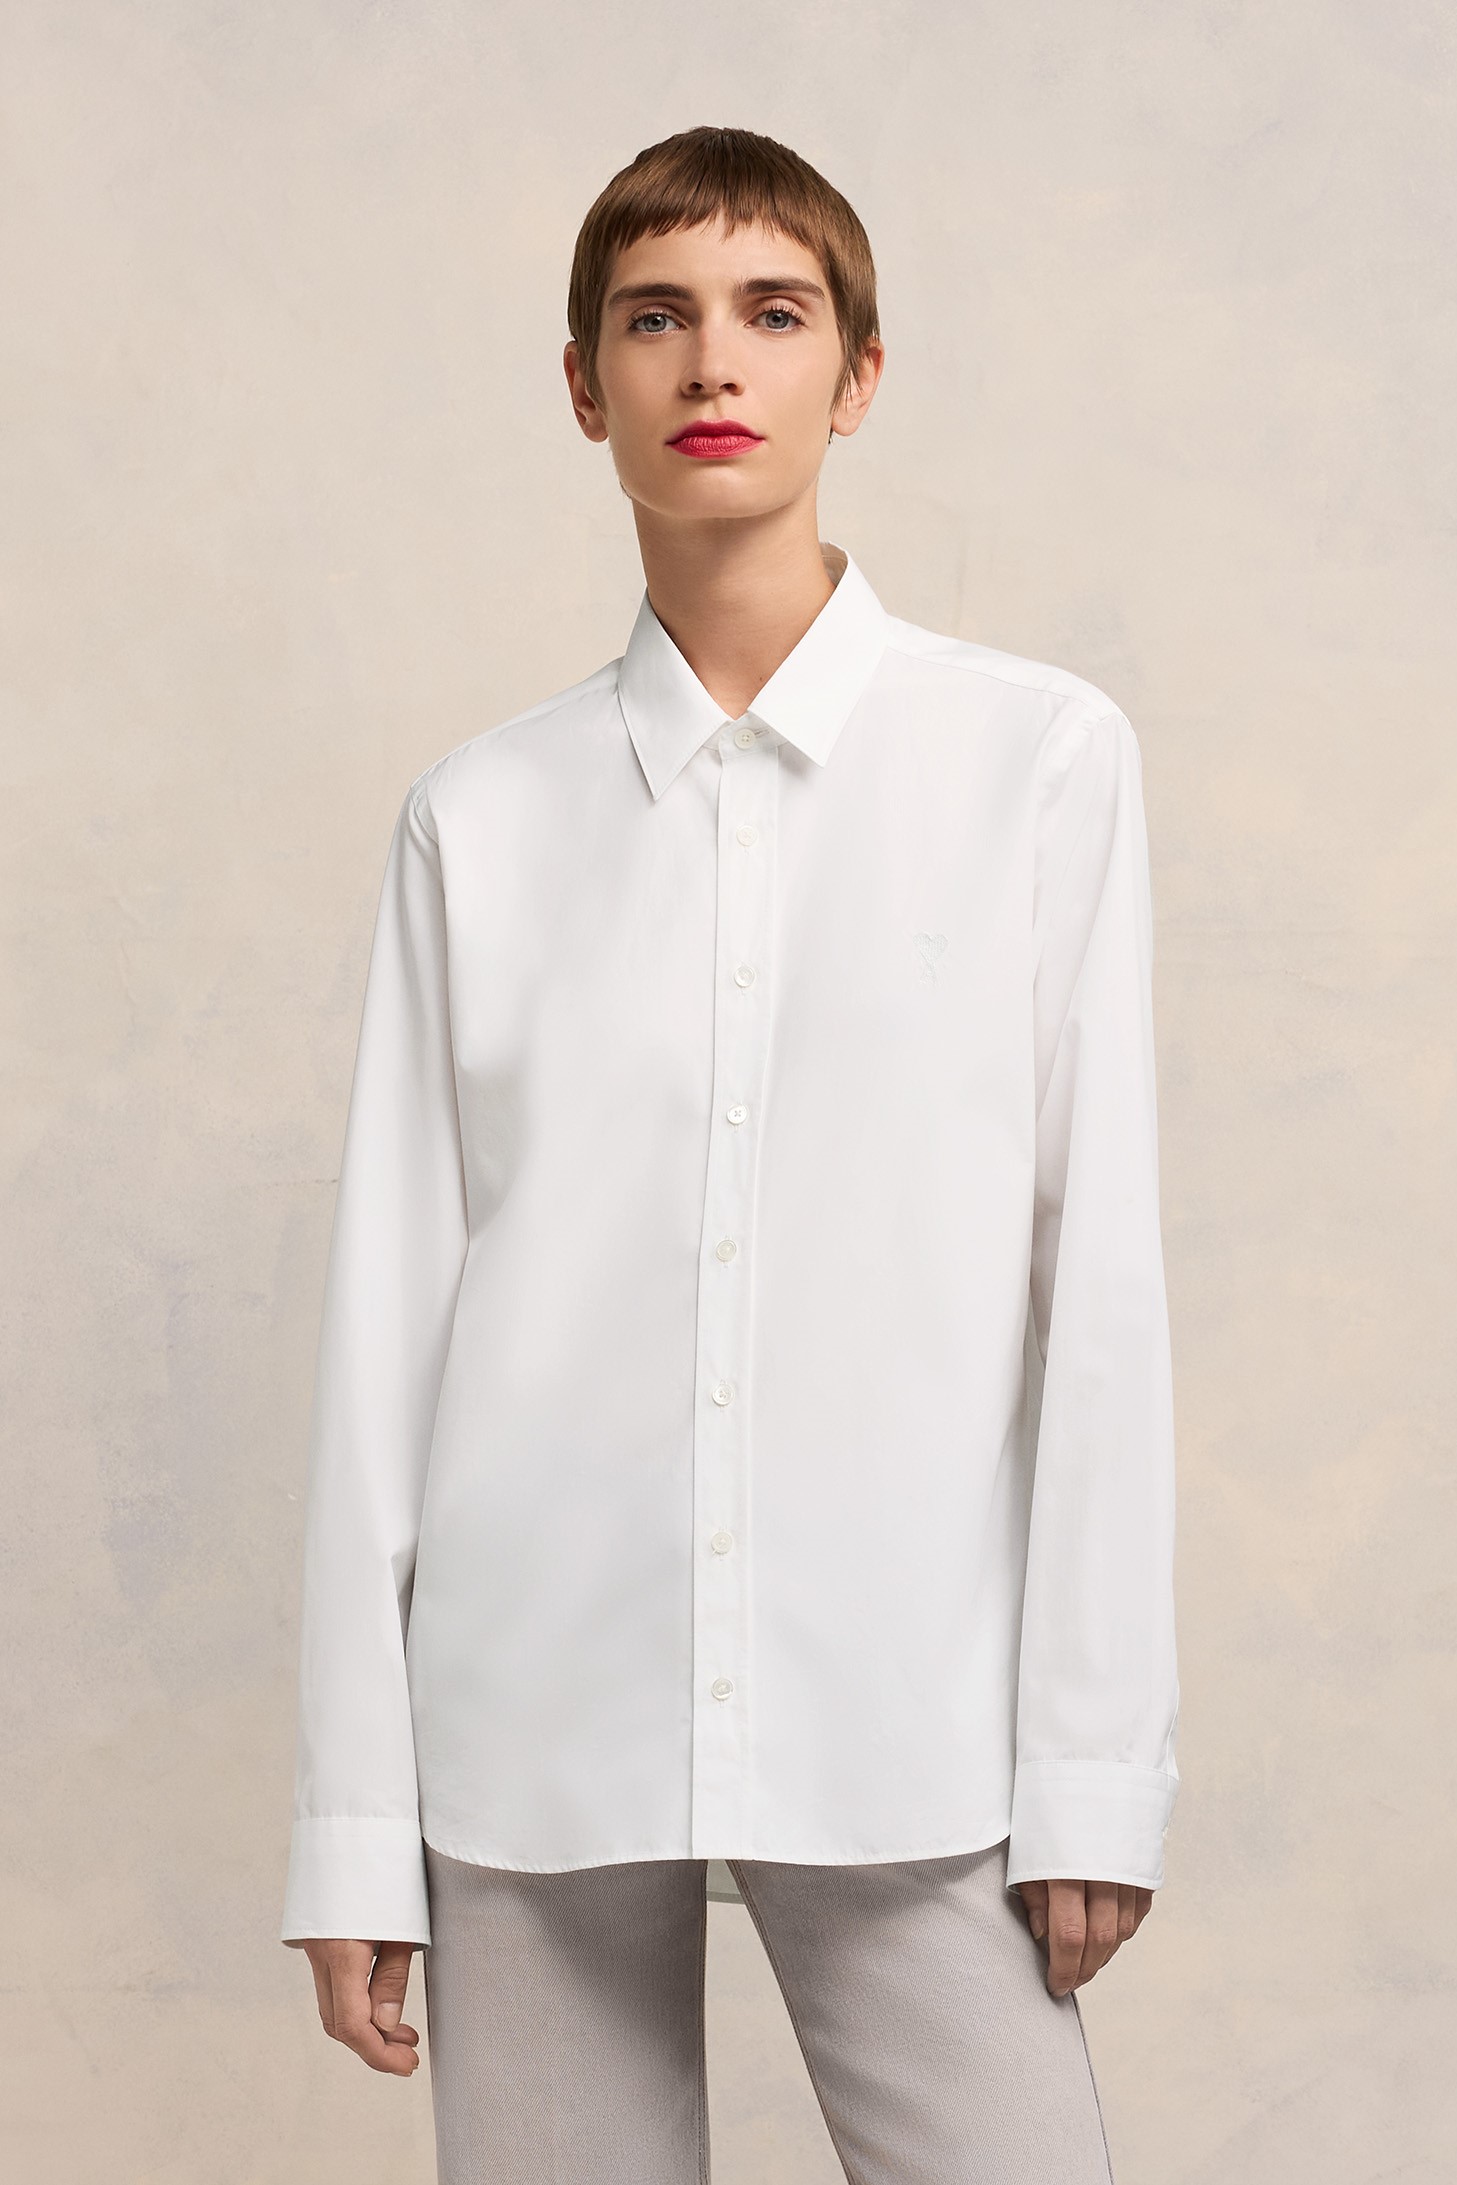 AMI PARIS de Coeur Classic Shirt in White